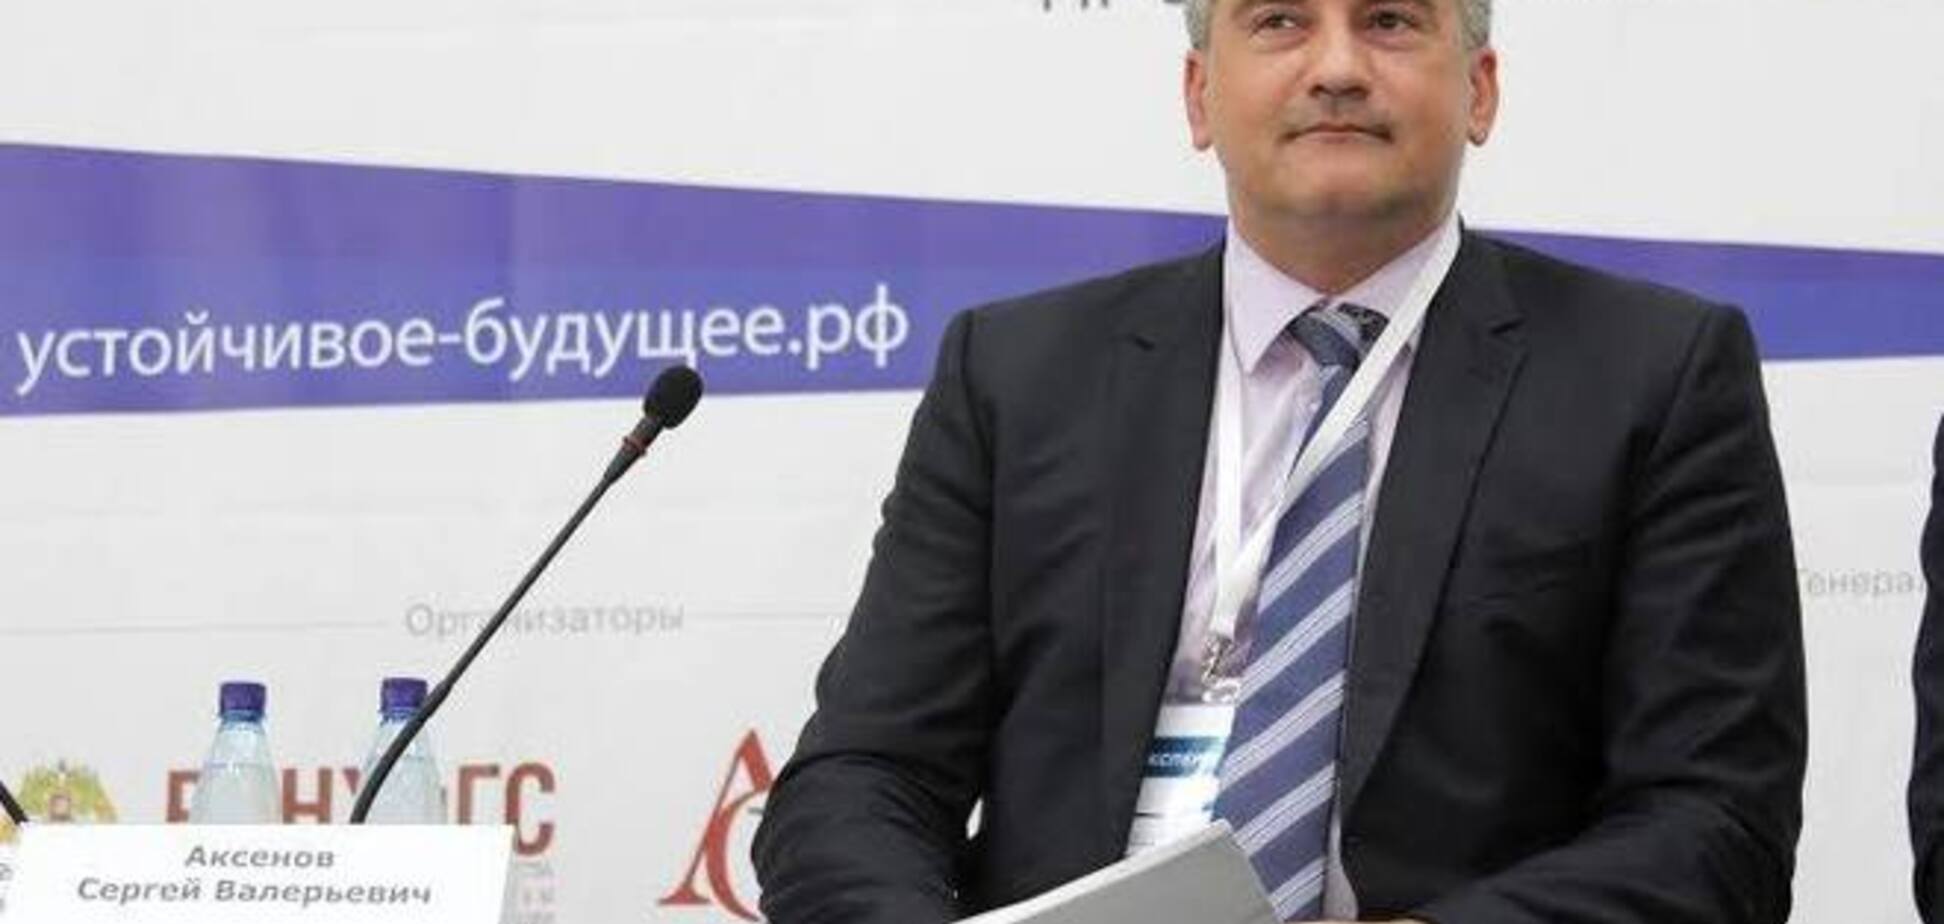 Аксьонов очолив виборчий список партії Путіна на виборах в Держрада Криму